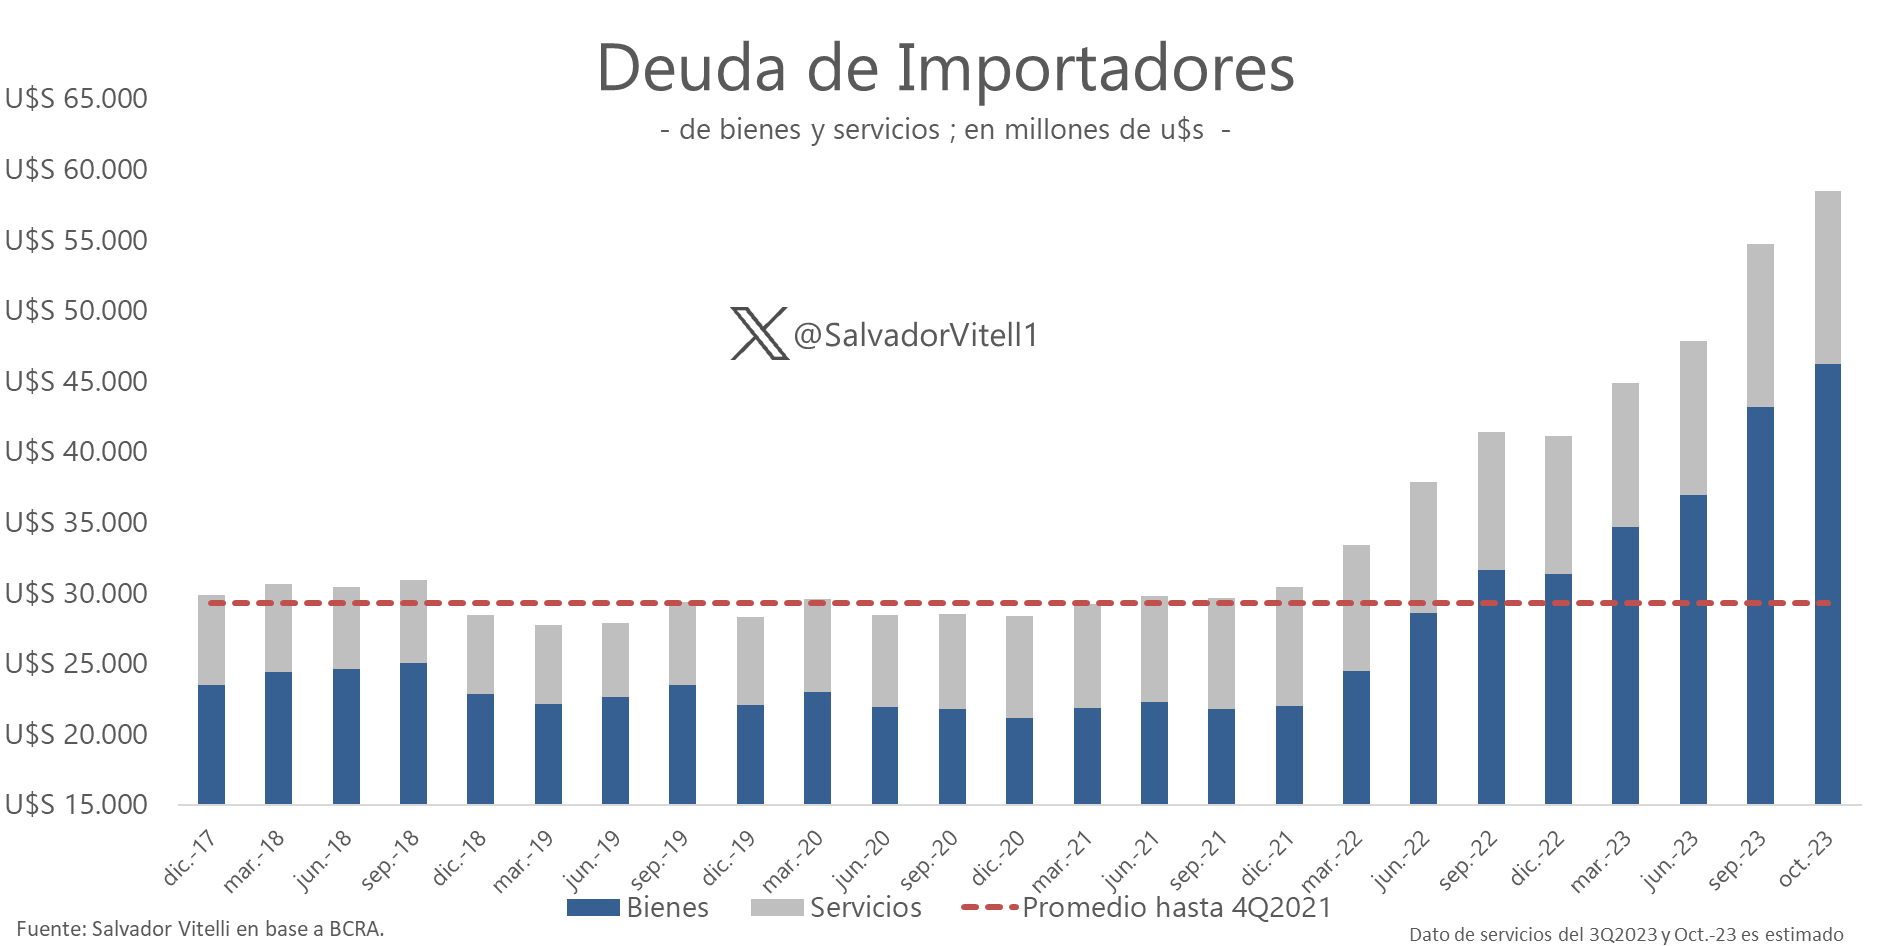 Los compromisos de los importadores de bienes acumulaban hasta octubre unos USD46.250 millones